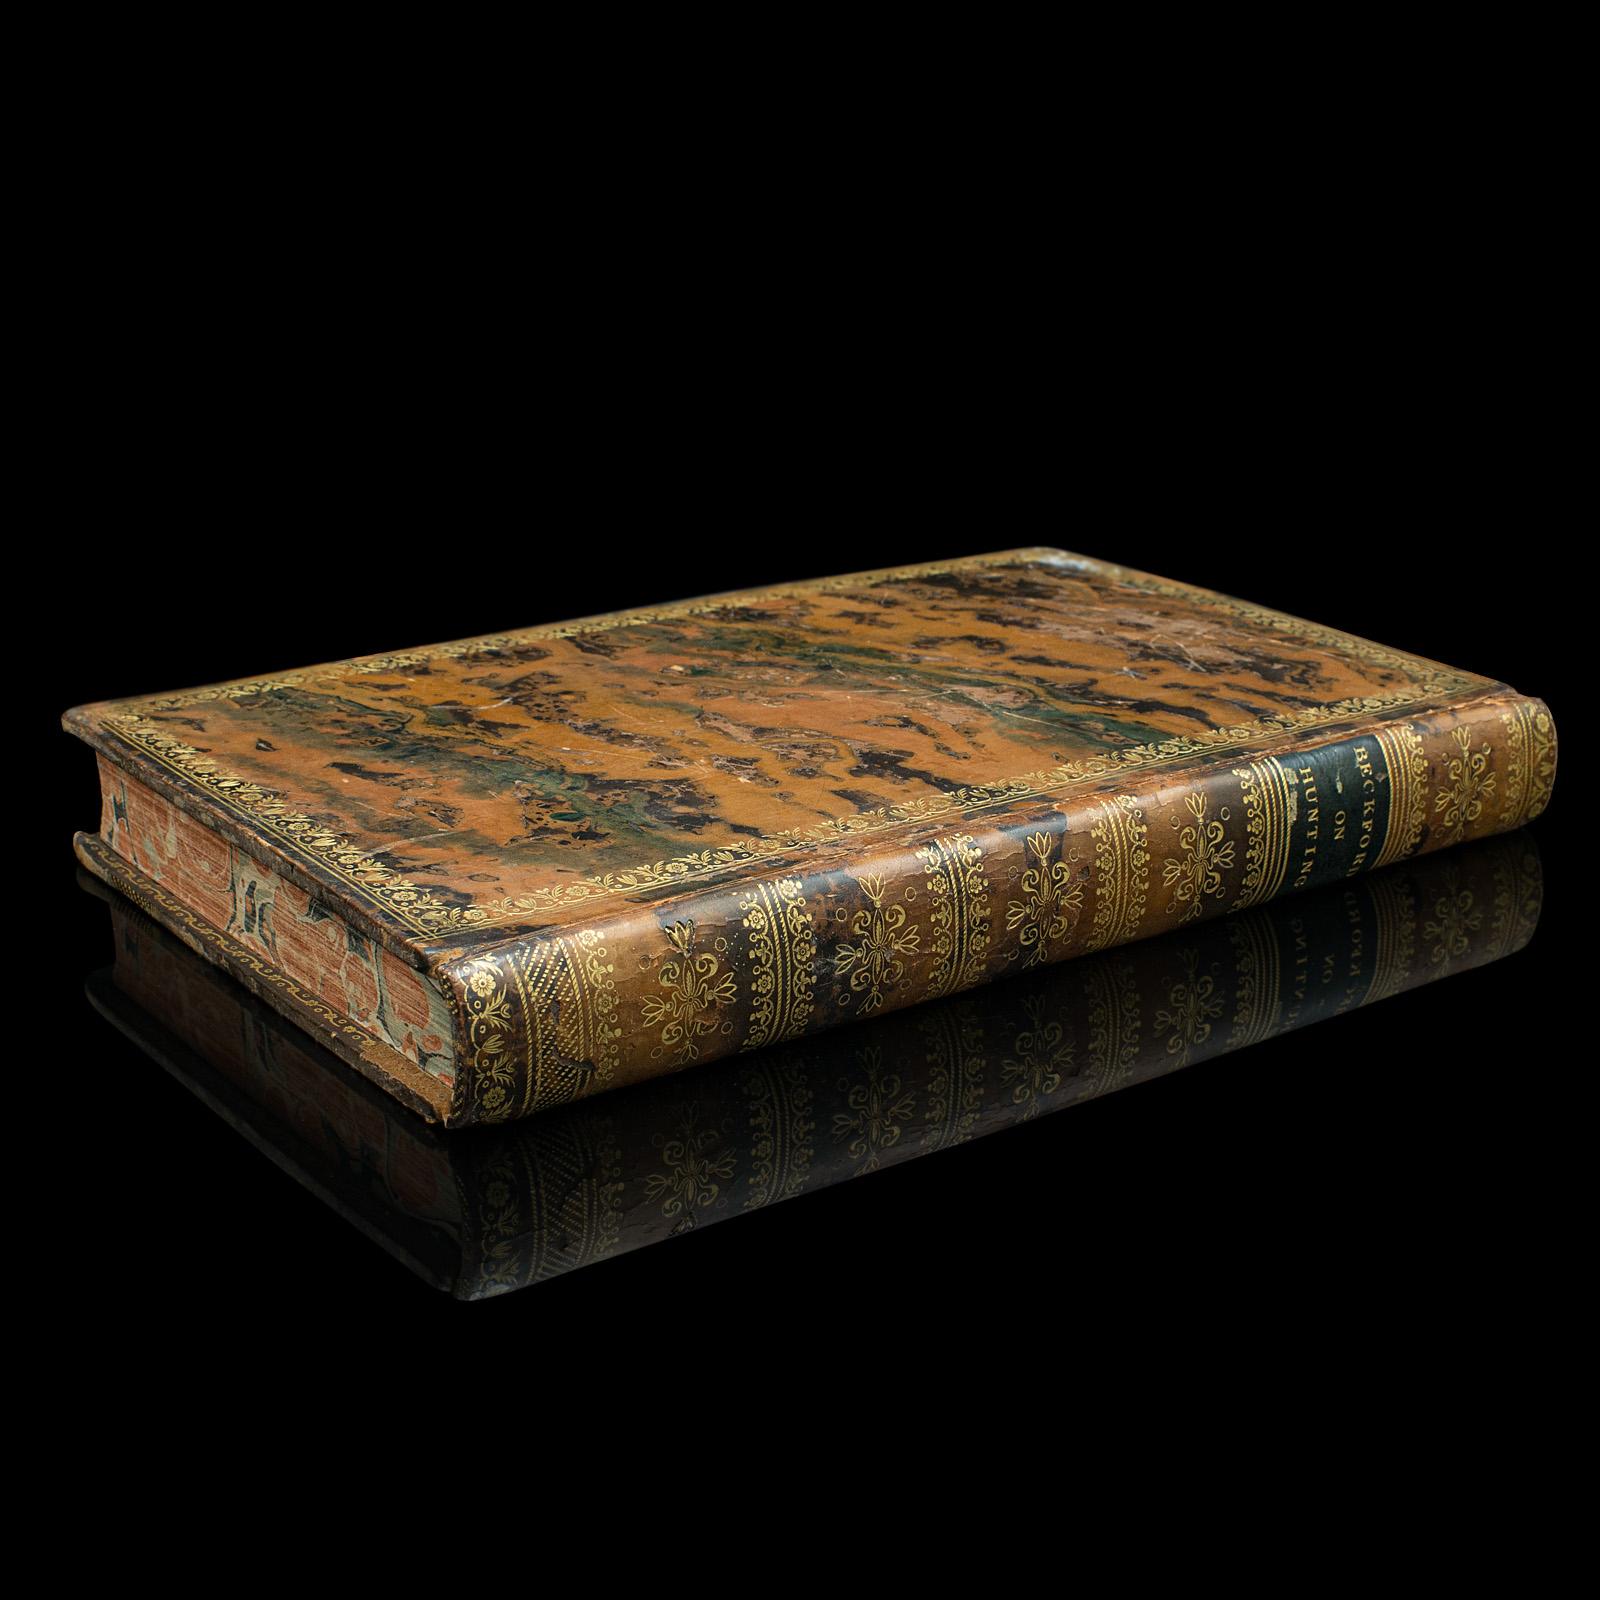 Dies ist ein antikes Buch, Thoughts on Hunting von William Beckford. Ein in englischer Sprache gebundenes Kompendium von Sportbriefen aus der georgischen Zeit, veröffentlicht 1810.

Der englische Romancier und Kunstkritiker William Beckford (1760 -